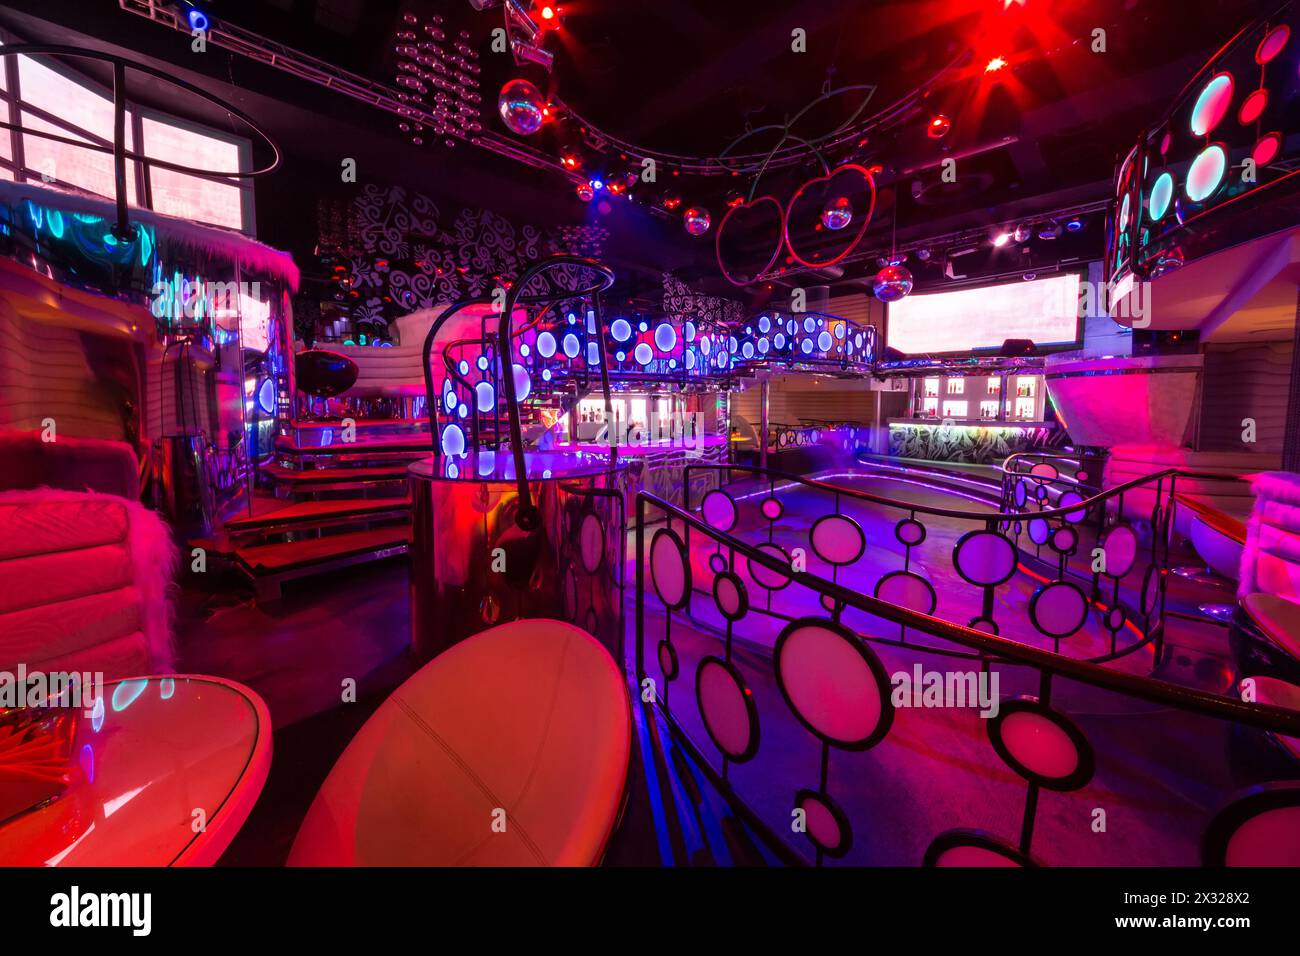 MOSKAU - 18. JAN: Das Innere der Räume des Nachtclubs Pacha mit Bar und Tanzfläche am 18. Januar 2013 in Moskau, Russland. Stockfoto